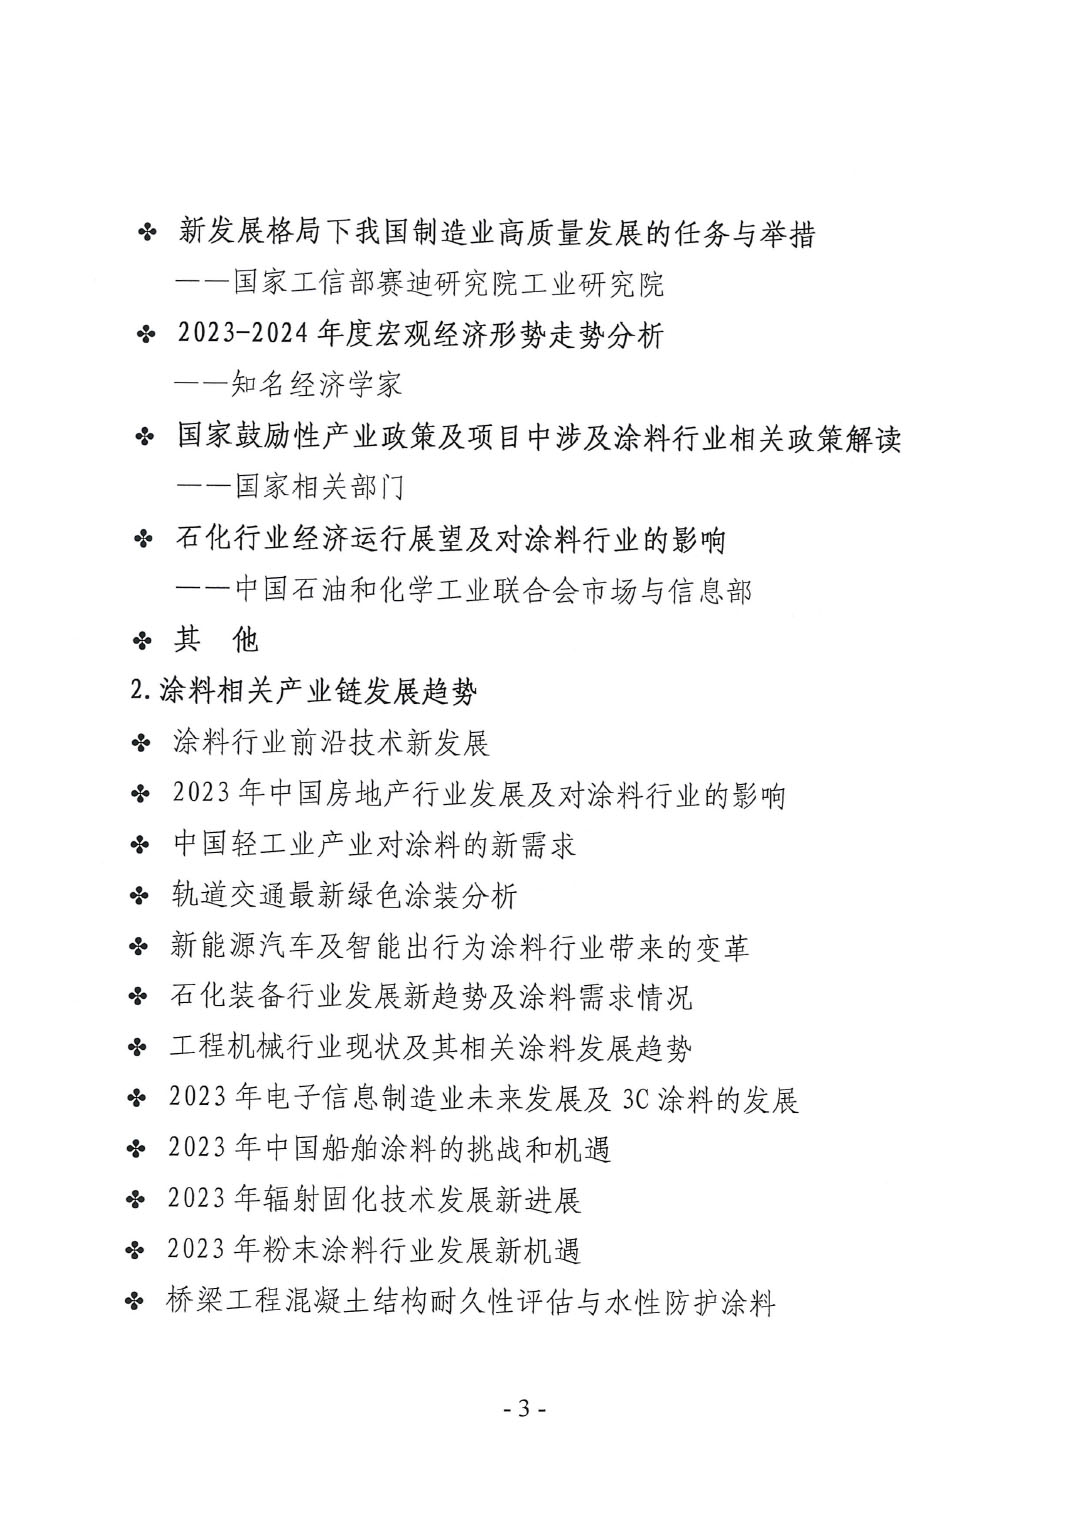 2023年中国涂料工业信息年会通知（发文版）0921-3